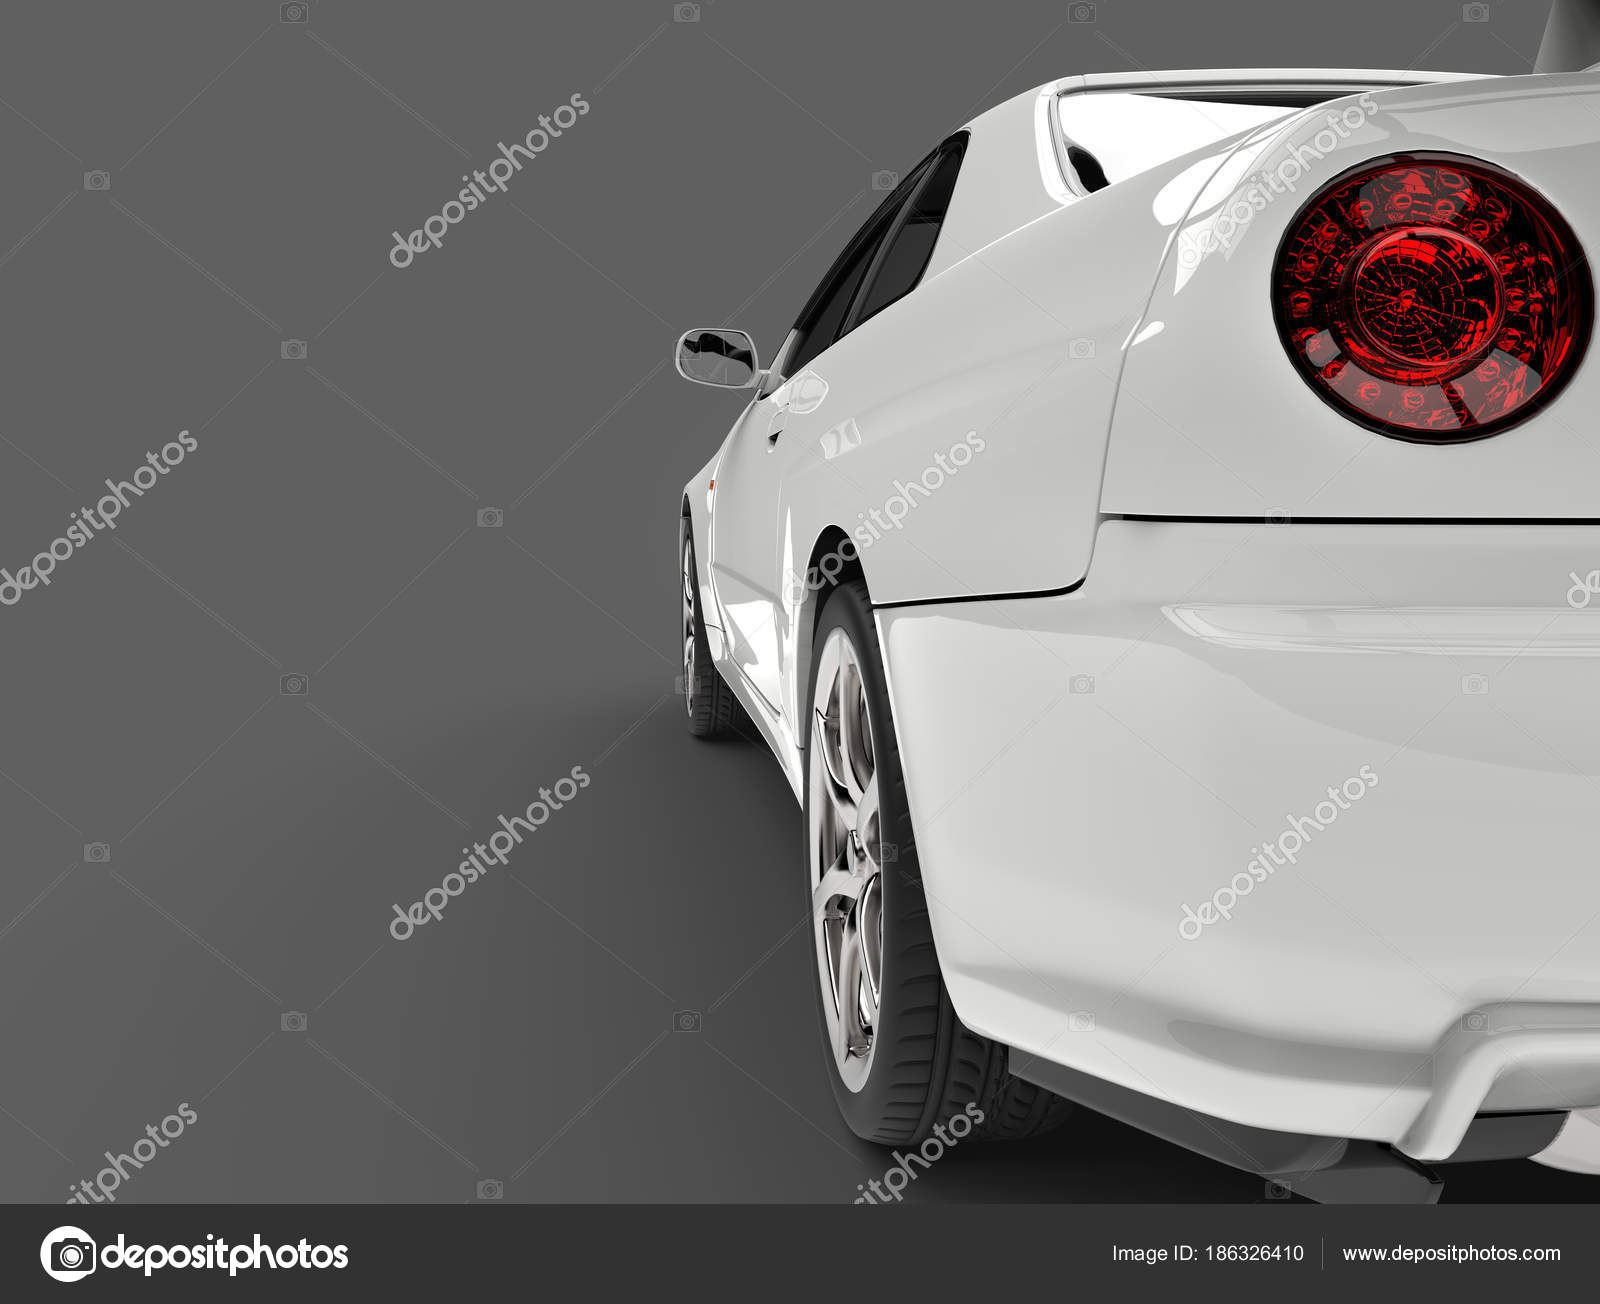 スポーツカー写真素材 ロイヤリティフリースポーツカー画像 Depositphotos